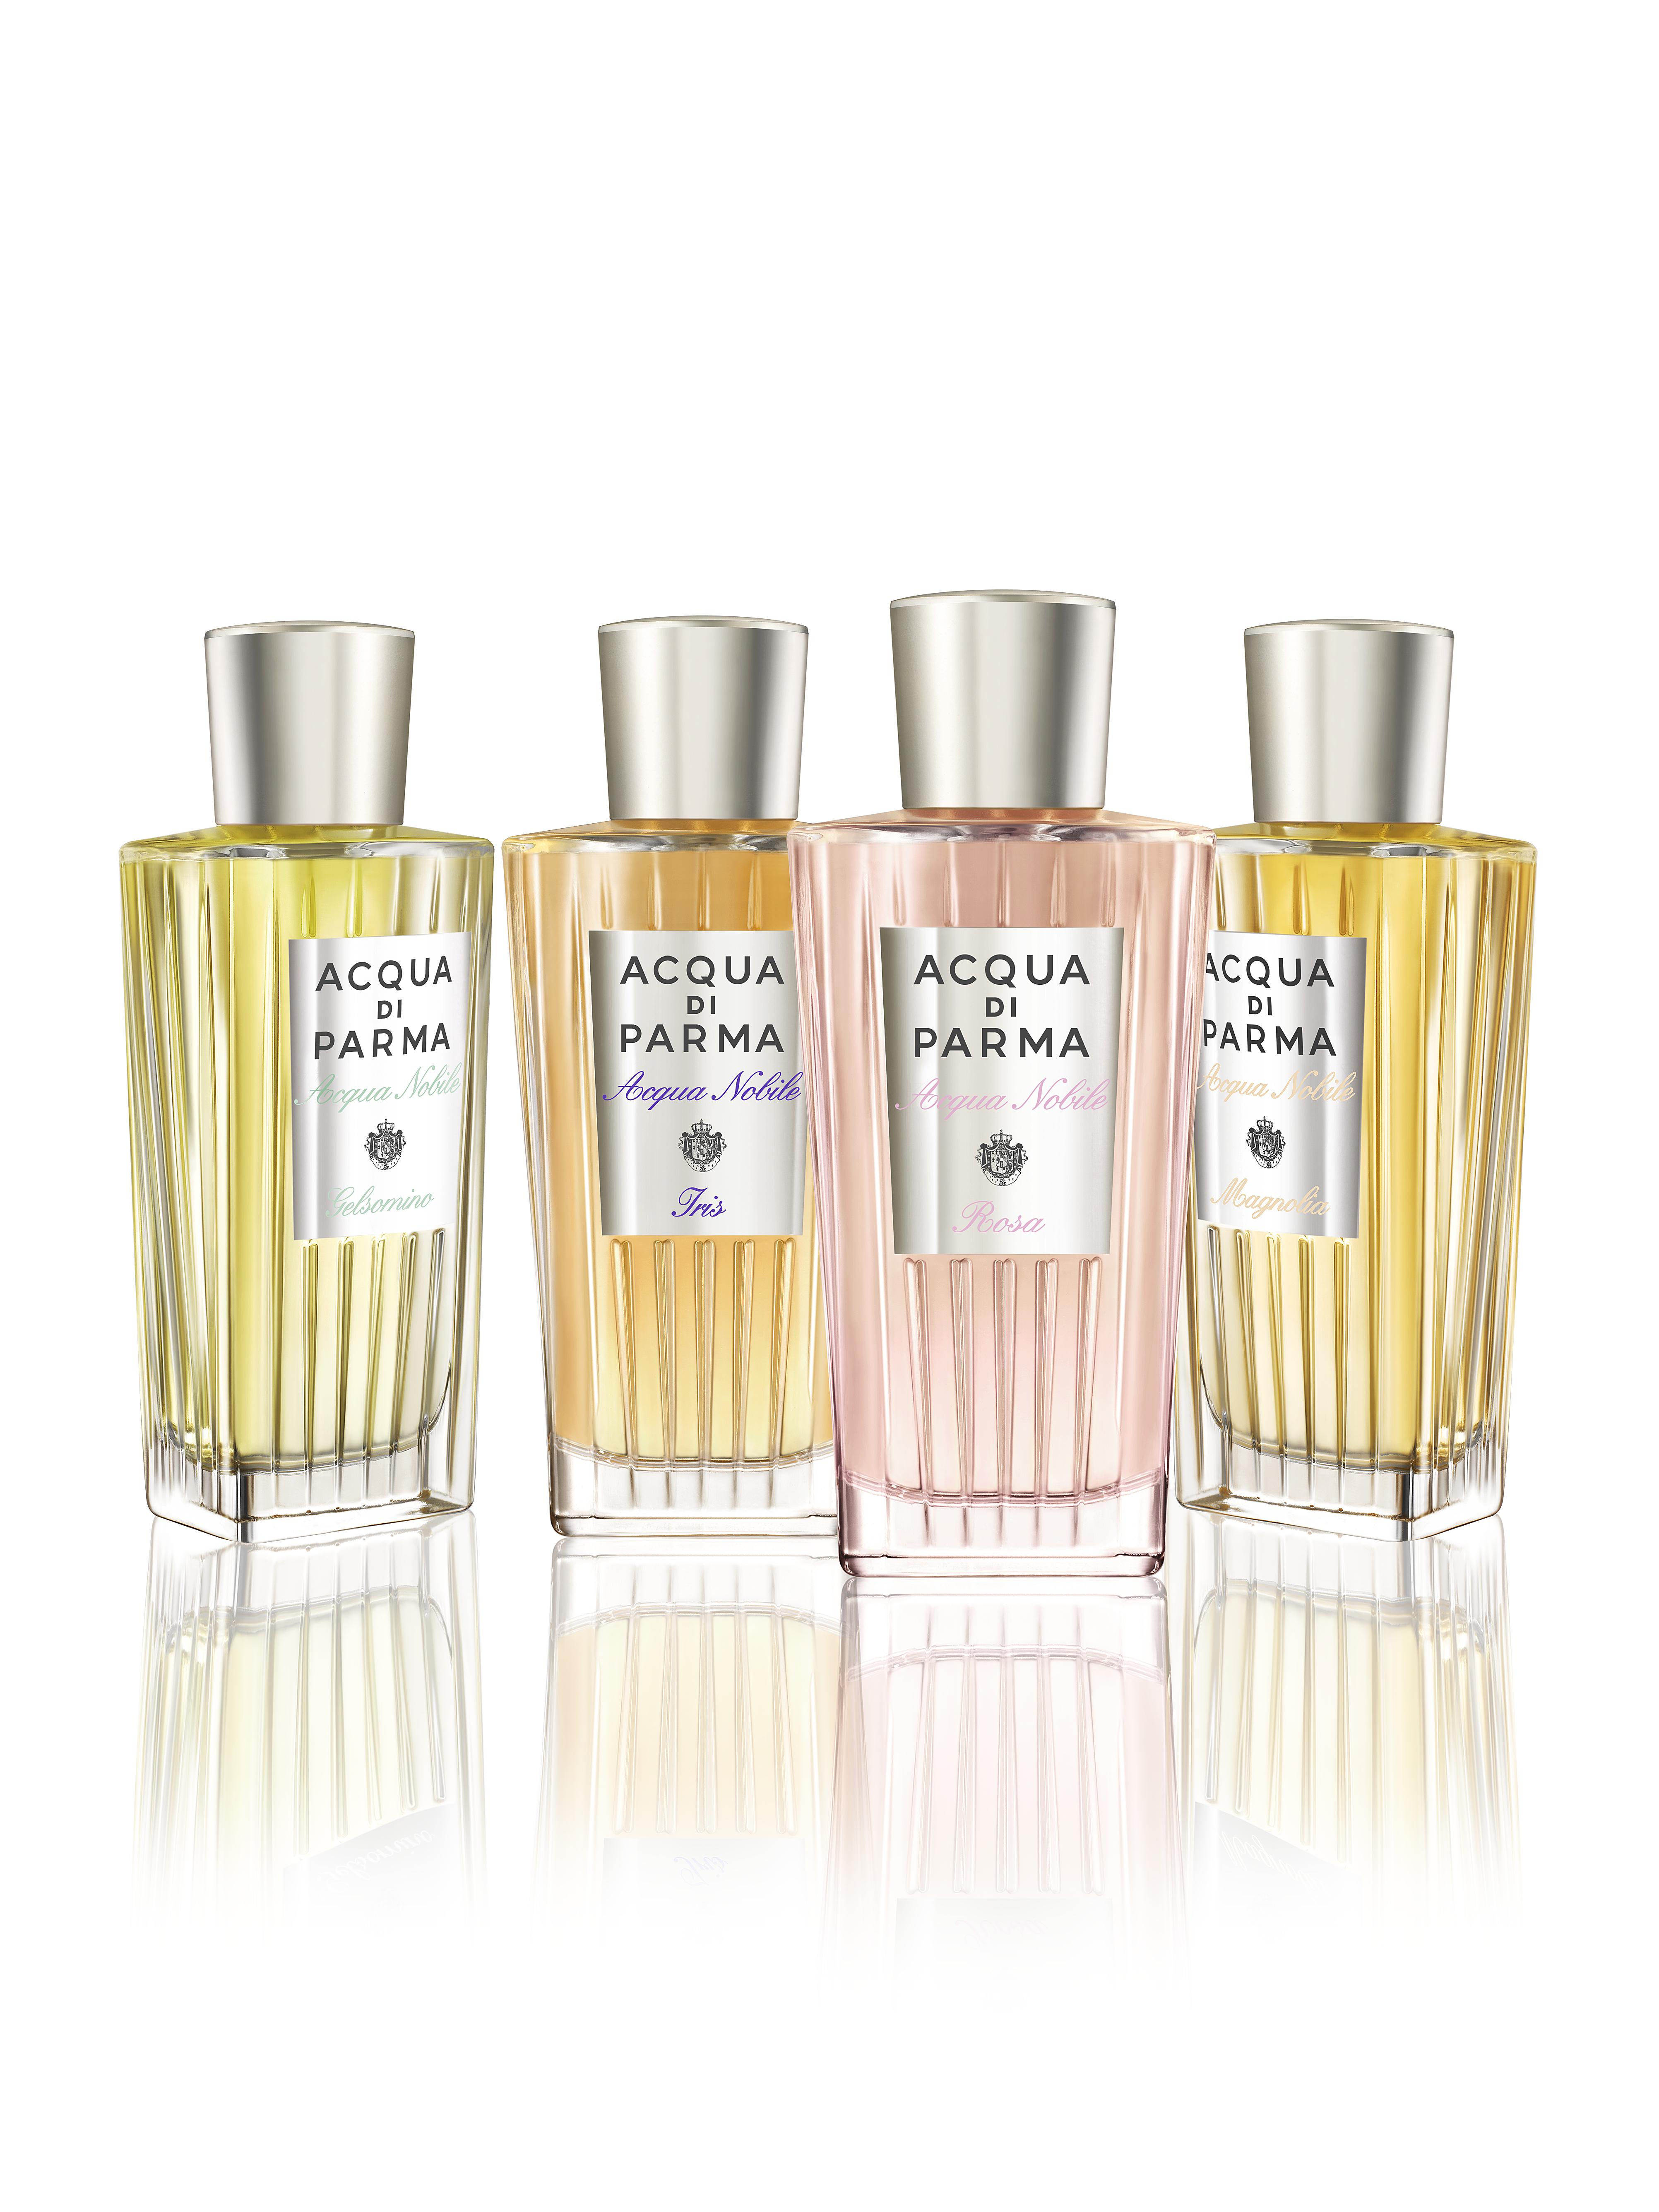 Le fragranze della collezione 'Acqua Nobile' di Acqua di Parma